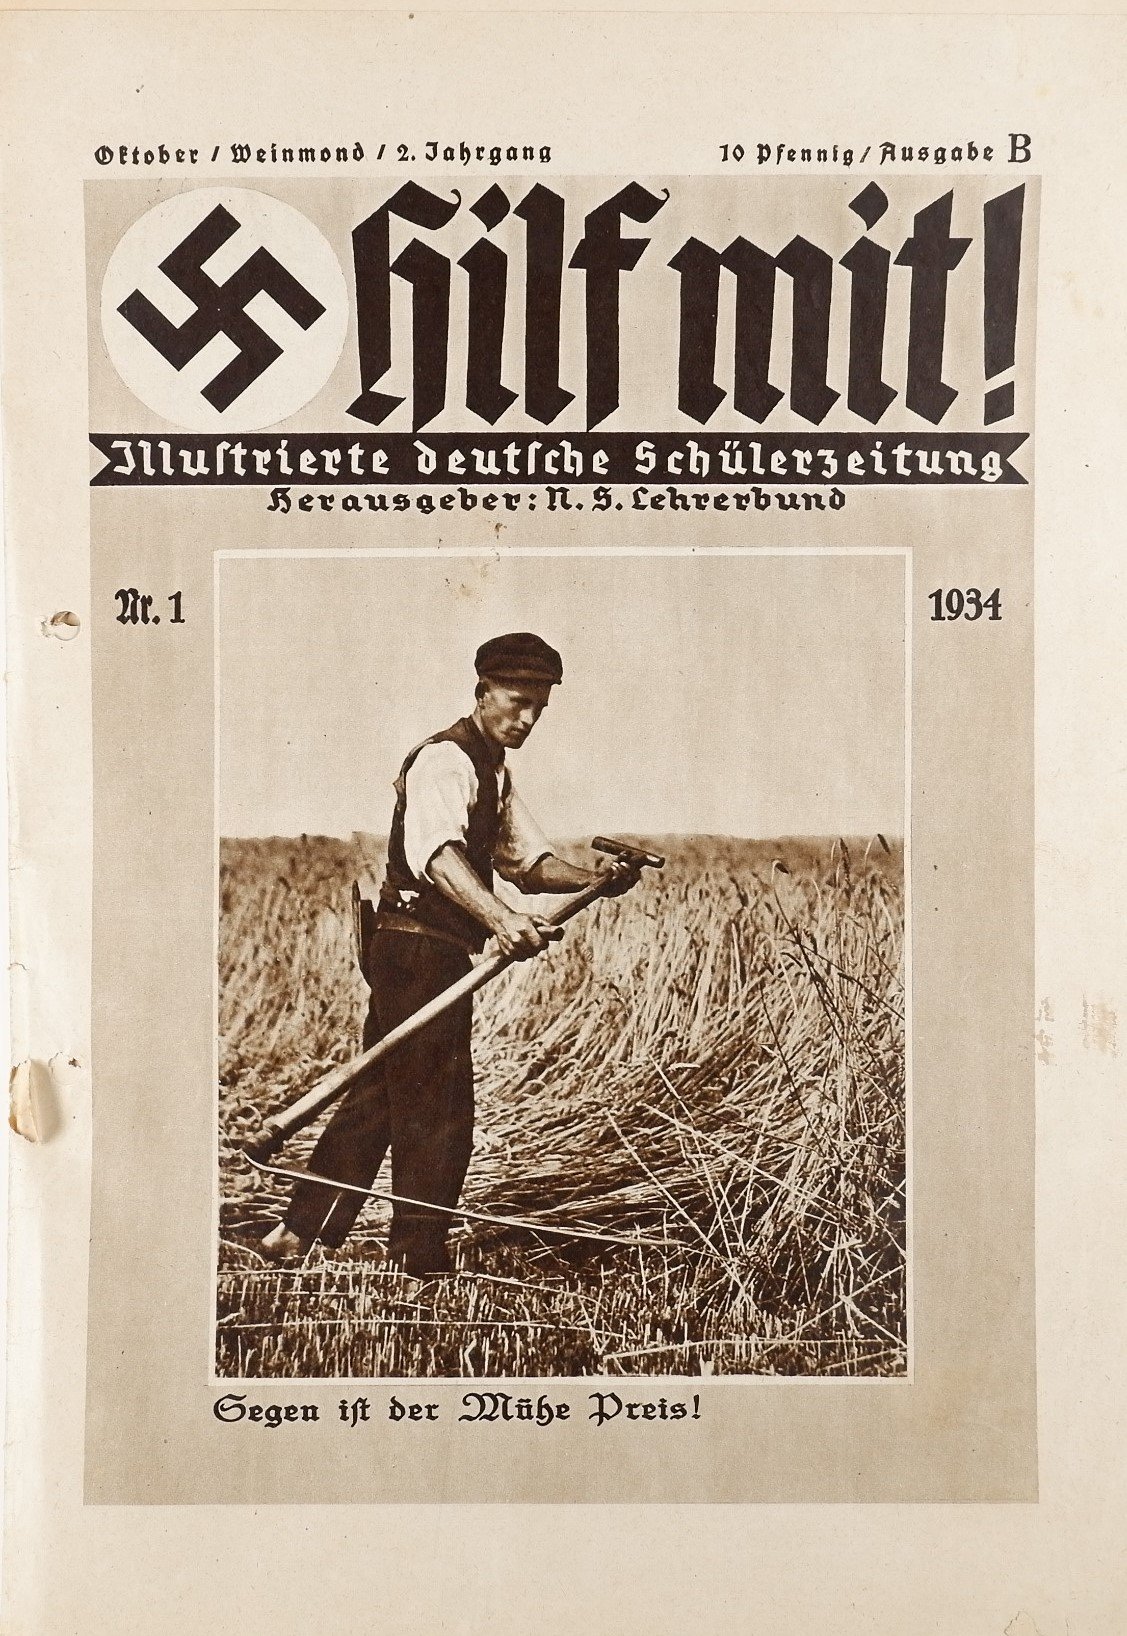 Hilf mit! - Illustrierte deutsche Schülerzeitung 1/1934 (Volkskunde- und Freilichtmuseum Roscheider Hof RR-F)